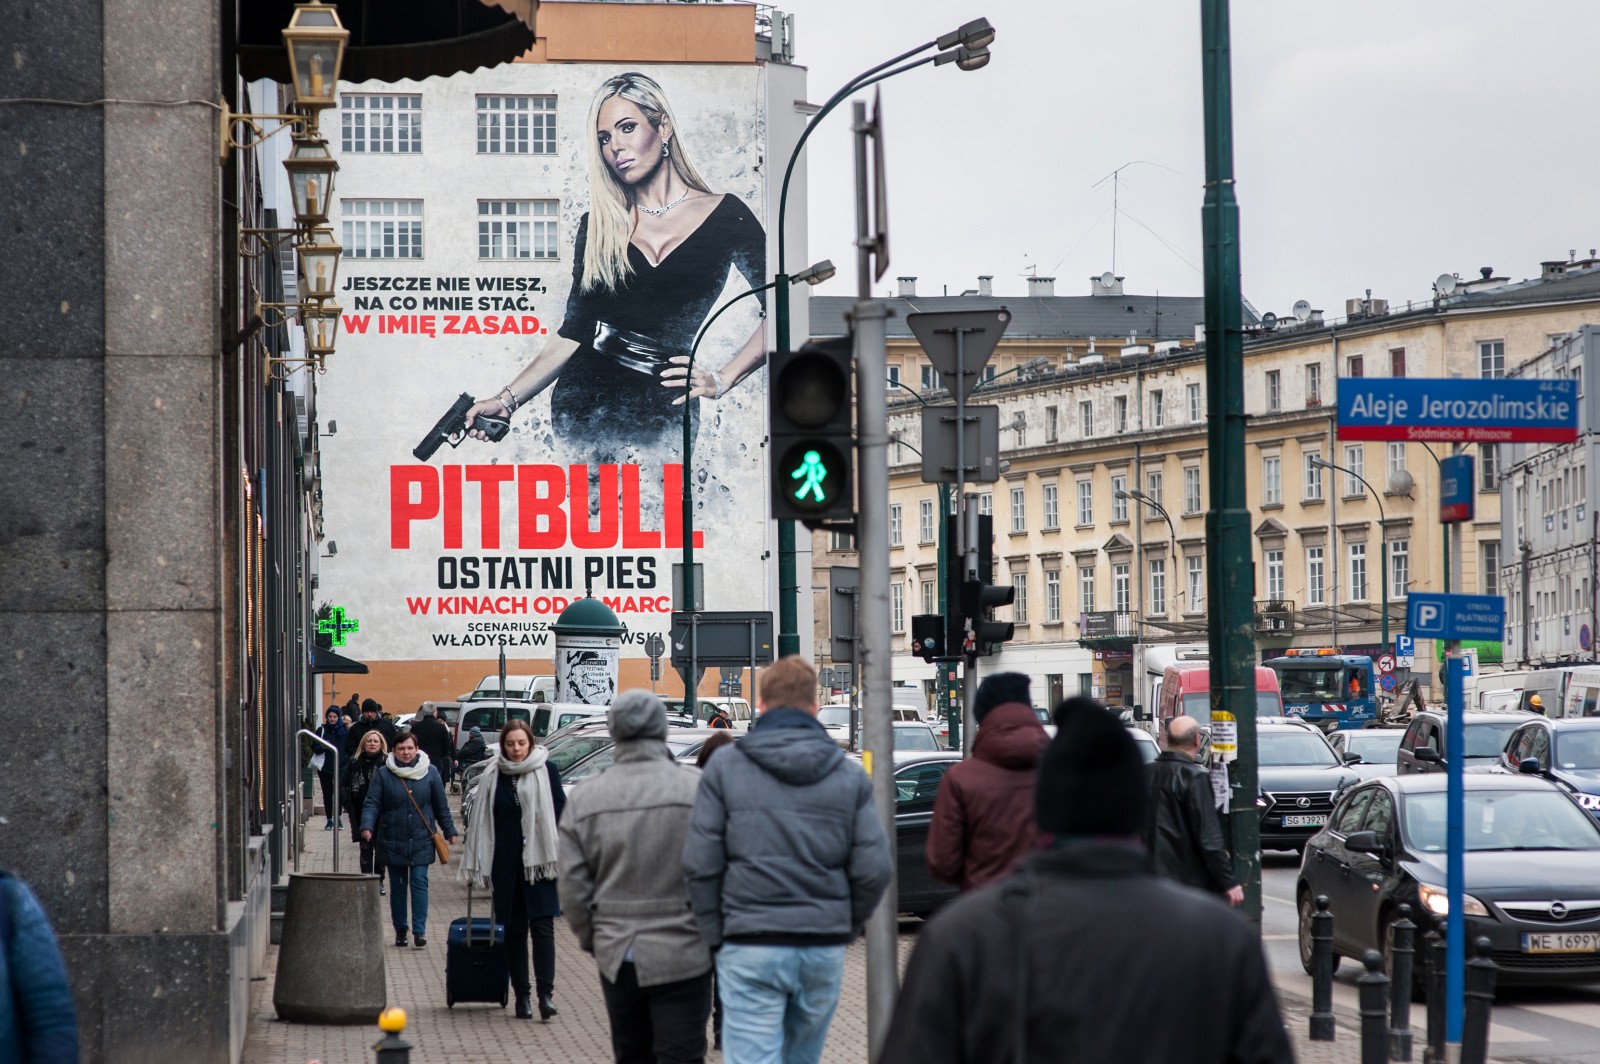 Widok na mural reklamowy film Pitbull z alei Jerozolimskich na ulice Bracką w Warszawie | Pitbull. Ostatni pies | Portfolio